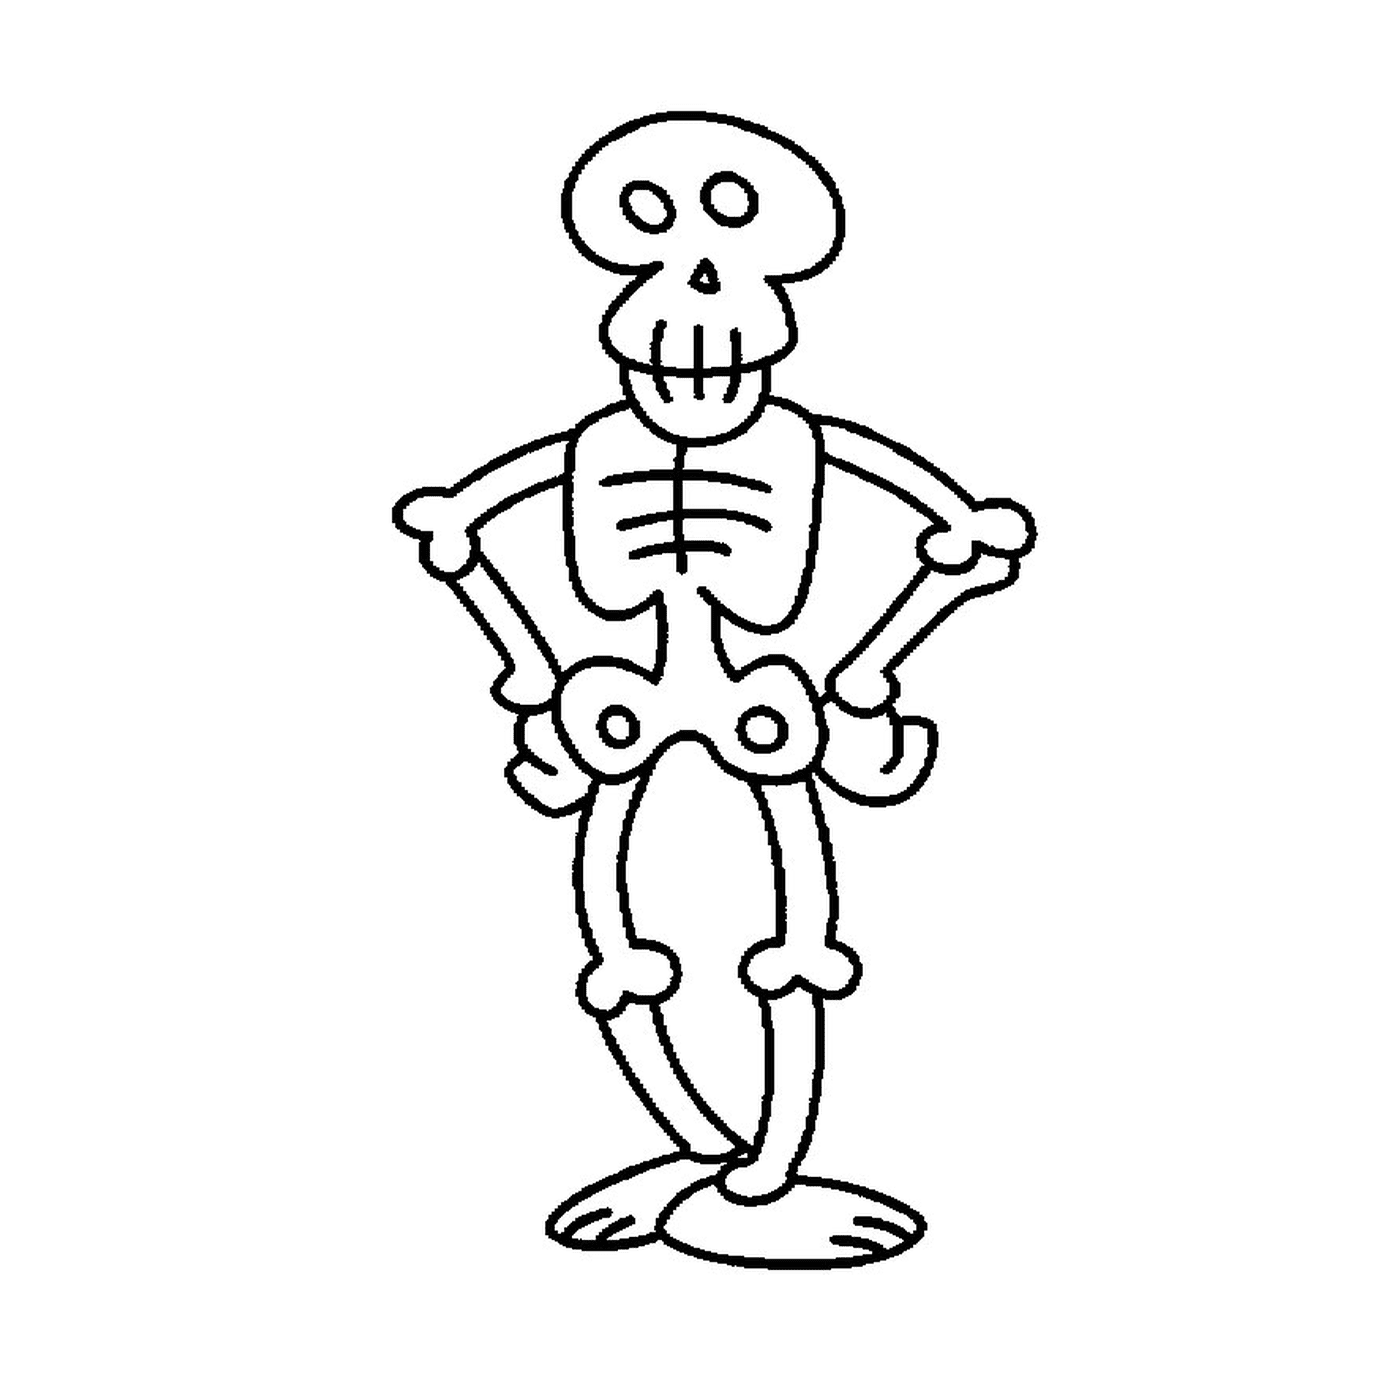  Divertido esqueleto de dibujos animados 